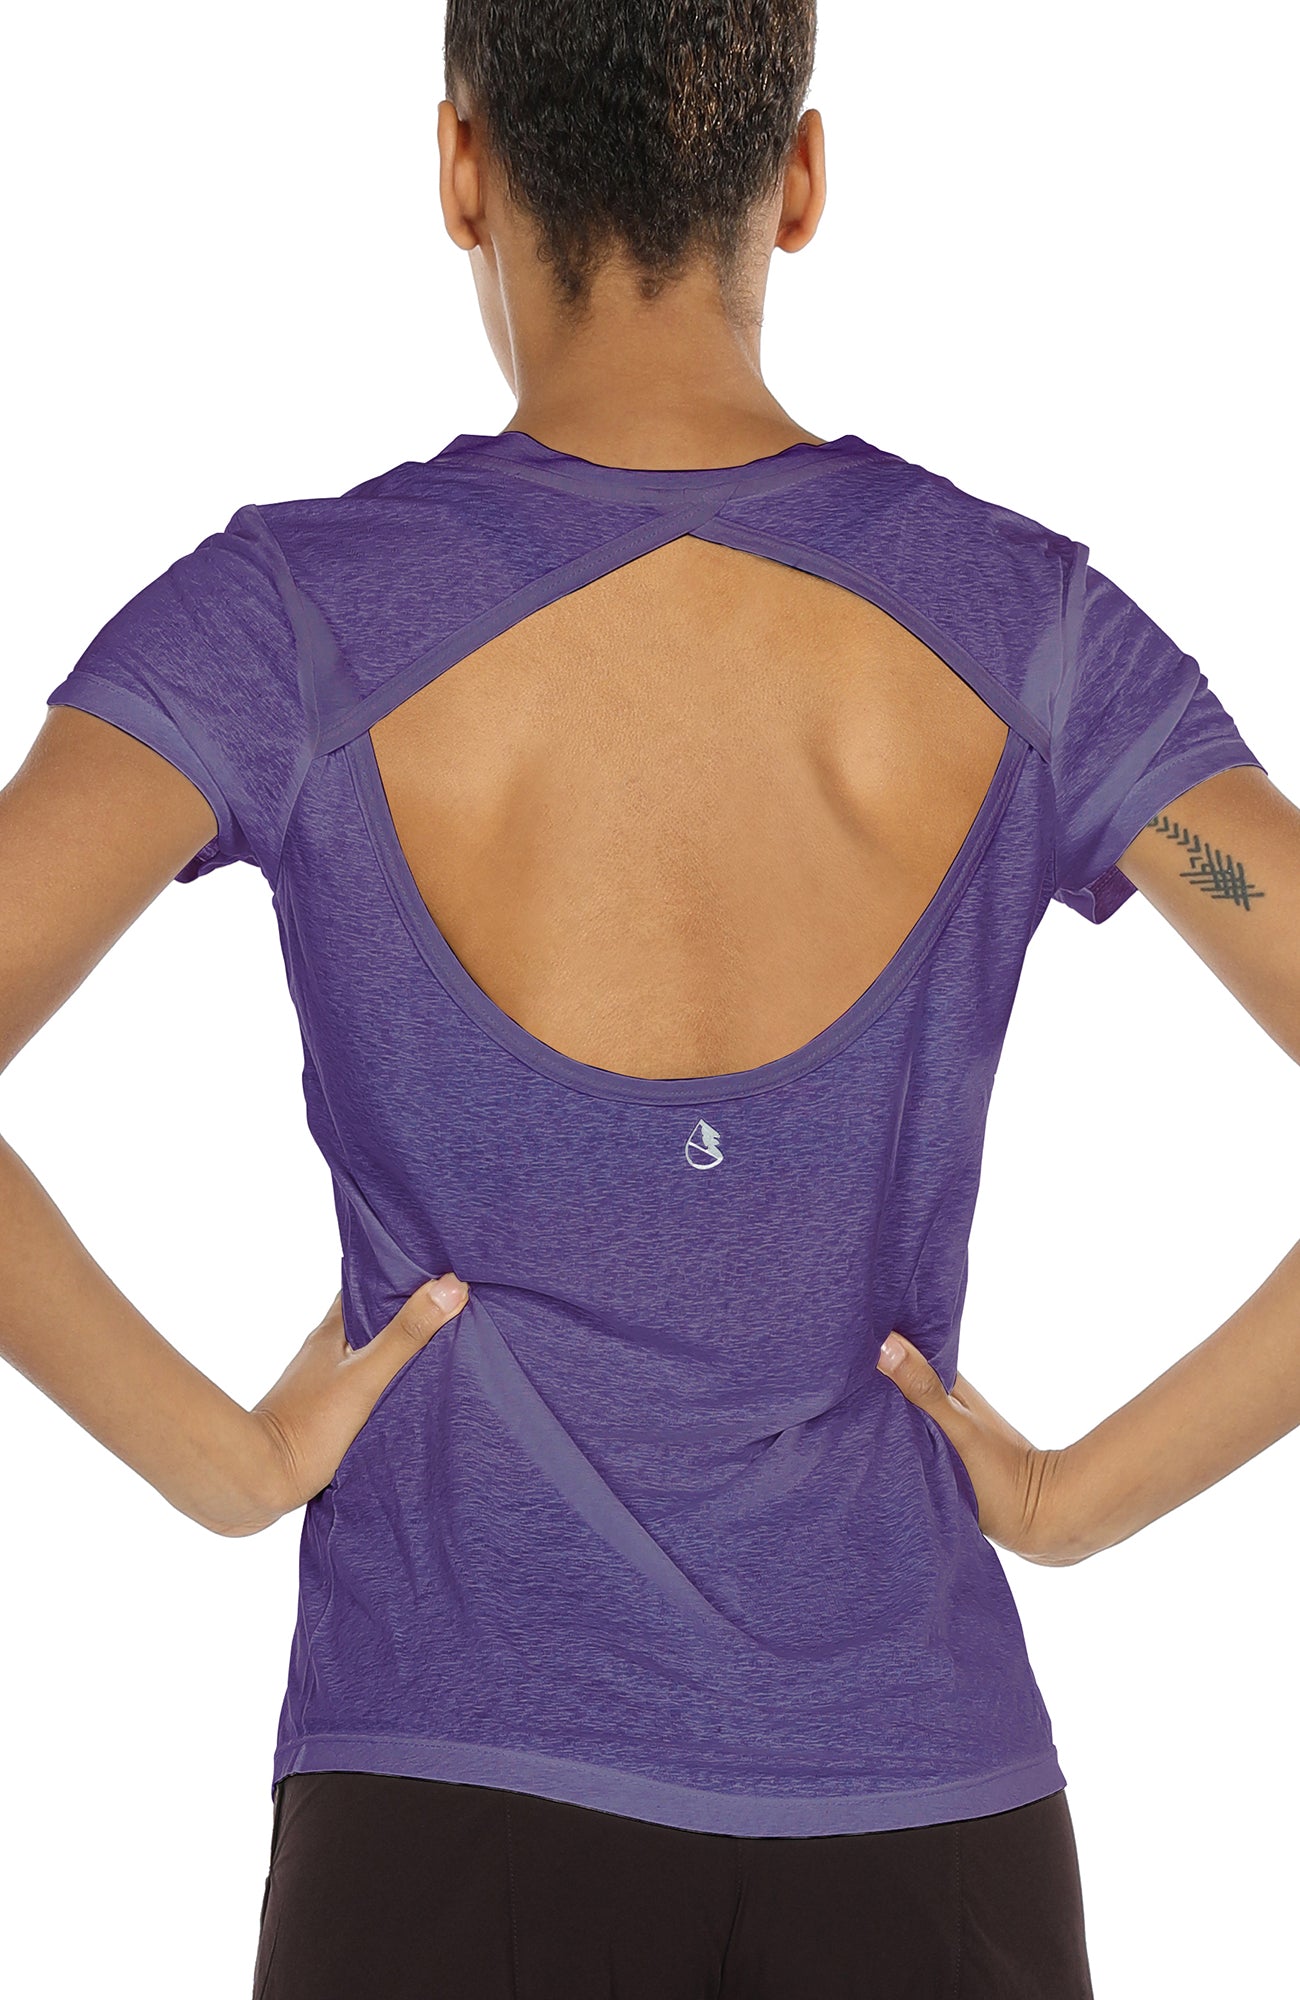 Yoga T-Shirt ZK01  Yoga tshirt, Yoga tops, Yoga shirts